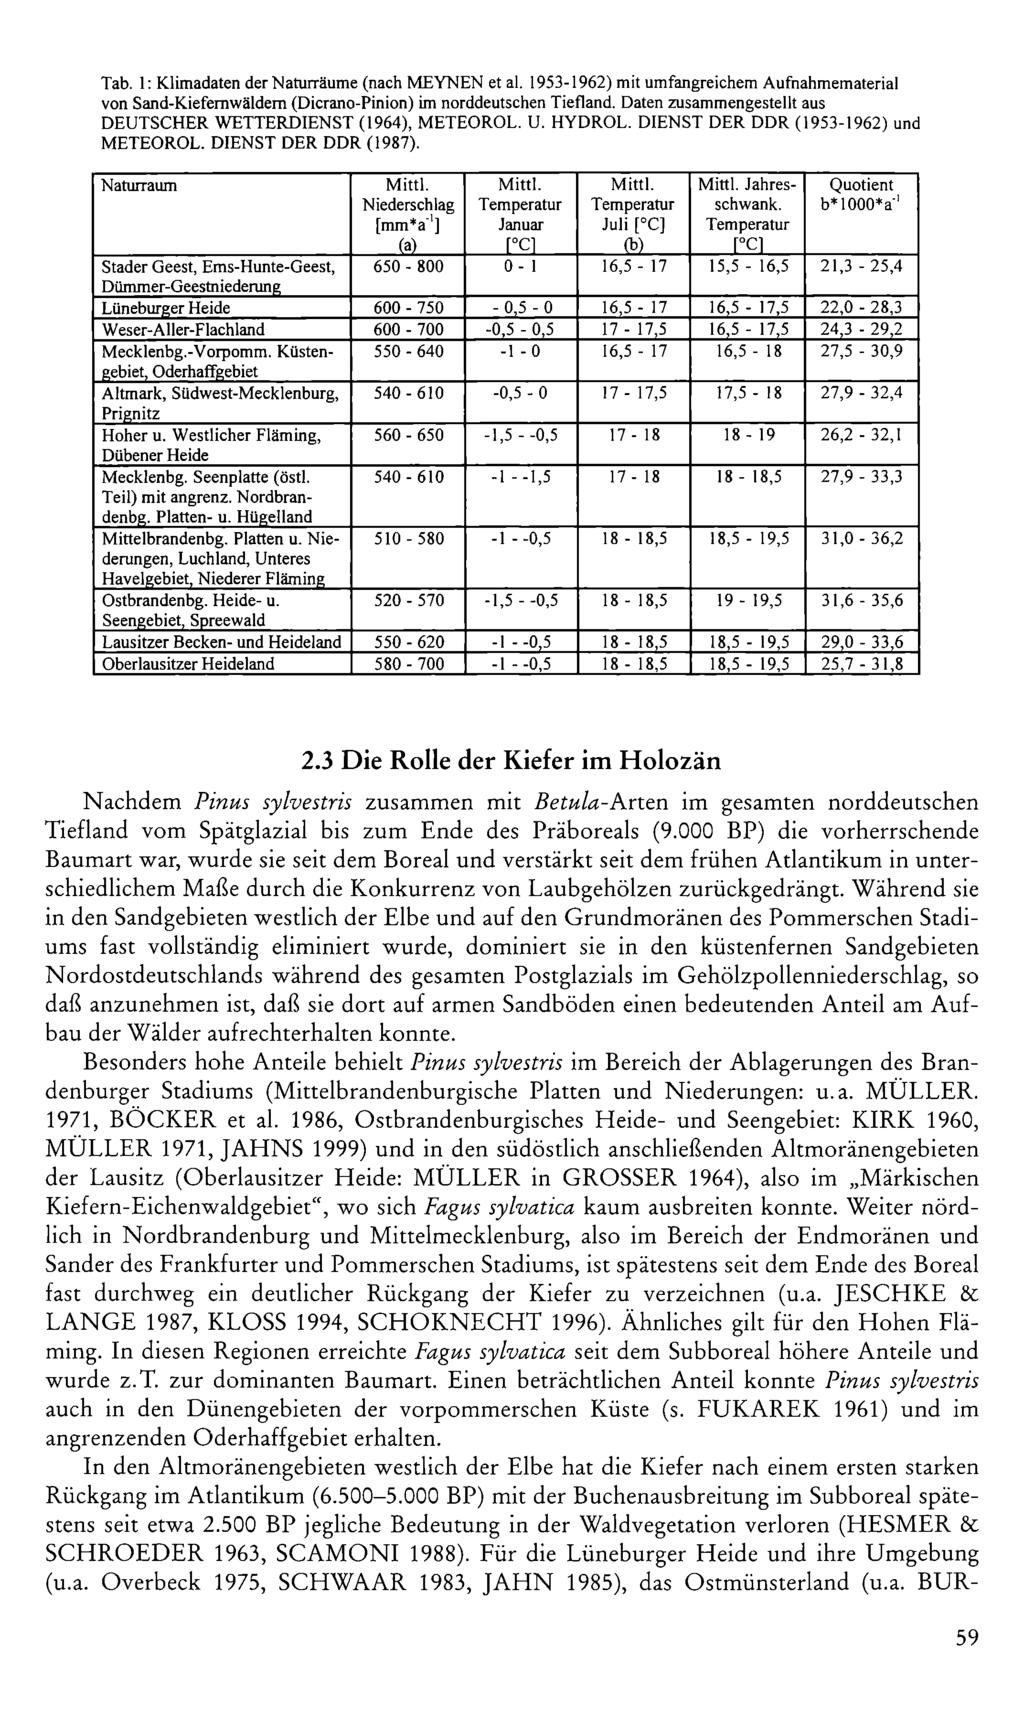 Tab. 1: Klimadaten der Naturräume (nach MEYNEN et al. 1953-1962) mit umfangreichem Aufnahmematerial von Sand-Kiefemwäldem (Dicrano-Pinion) im norddeutschen Tiefland.